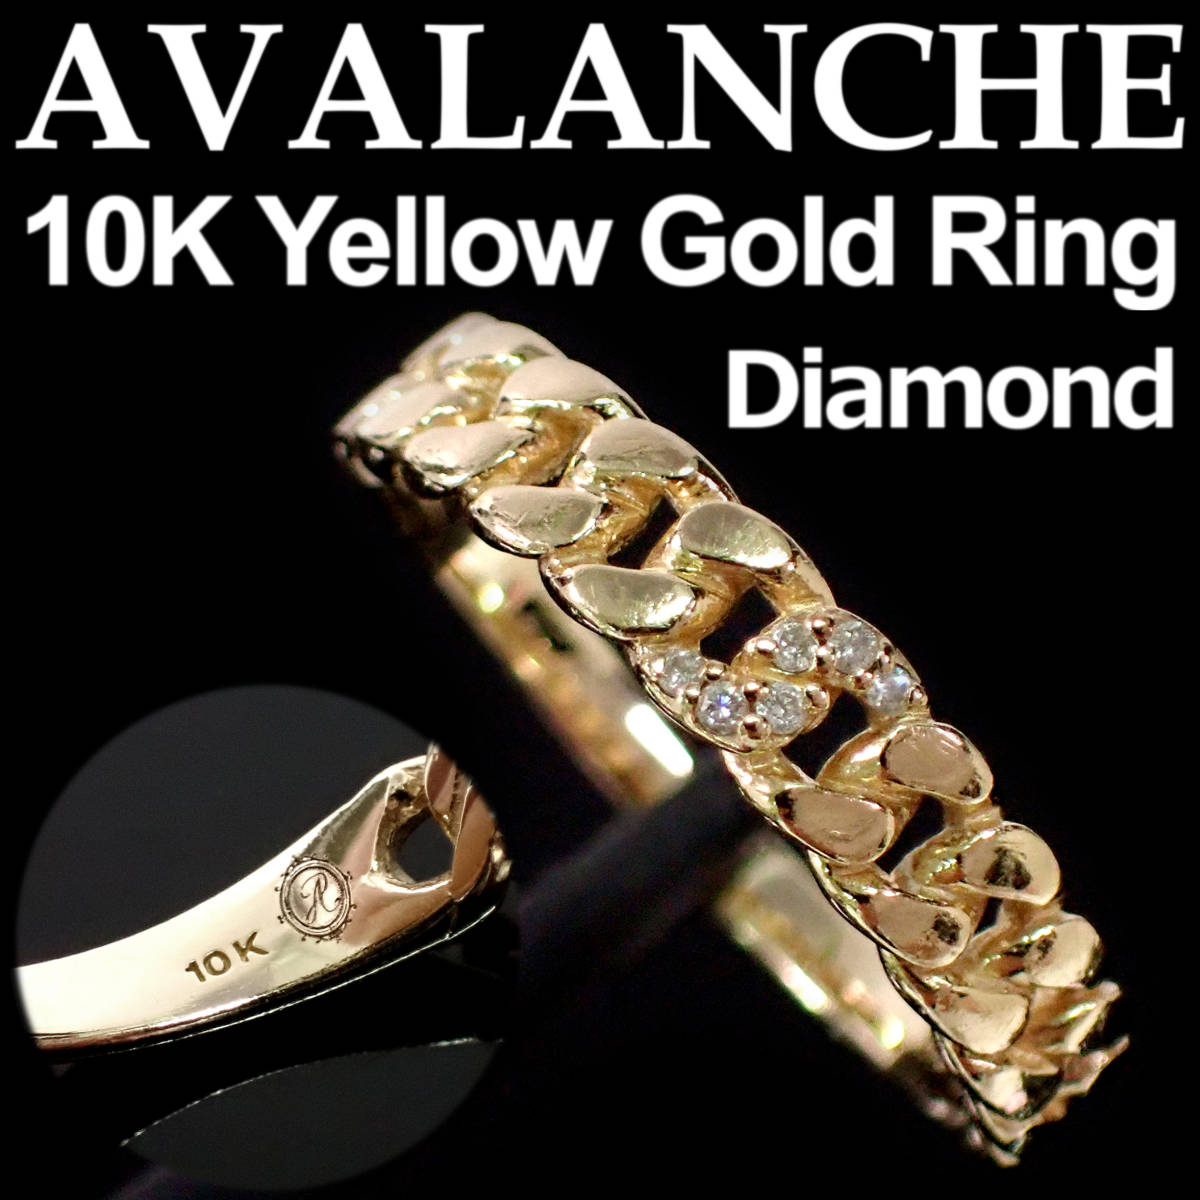 AVALANCHE Diamond 10K Yellow Gold Ring 13号 アヴァランチ ダイヤモンド イエローゴールド リング 1-9778-01_画像1